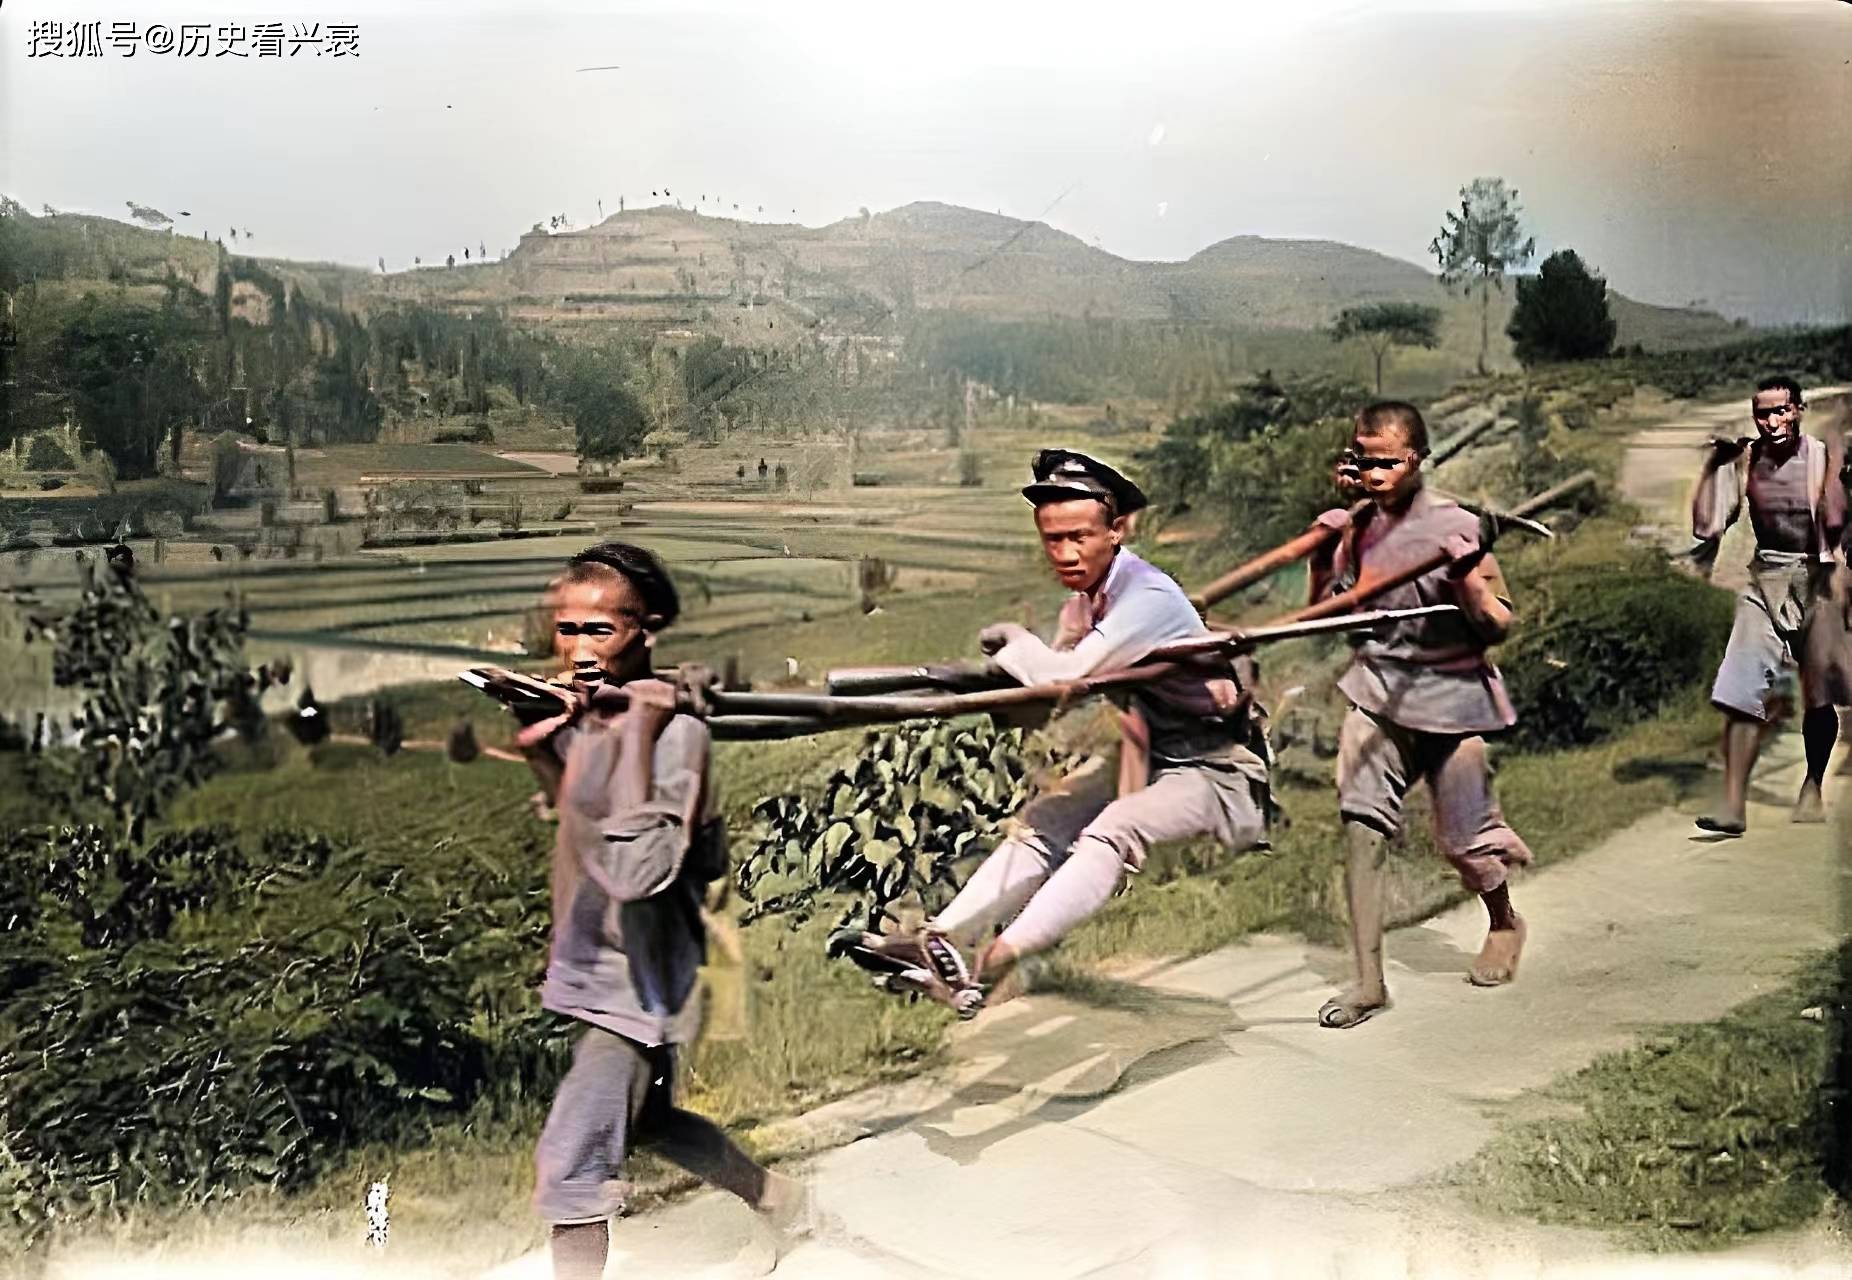 原创老照片民国时期的四川人民国时期北京的猎人